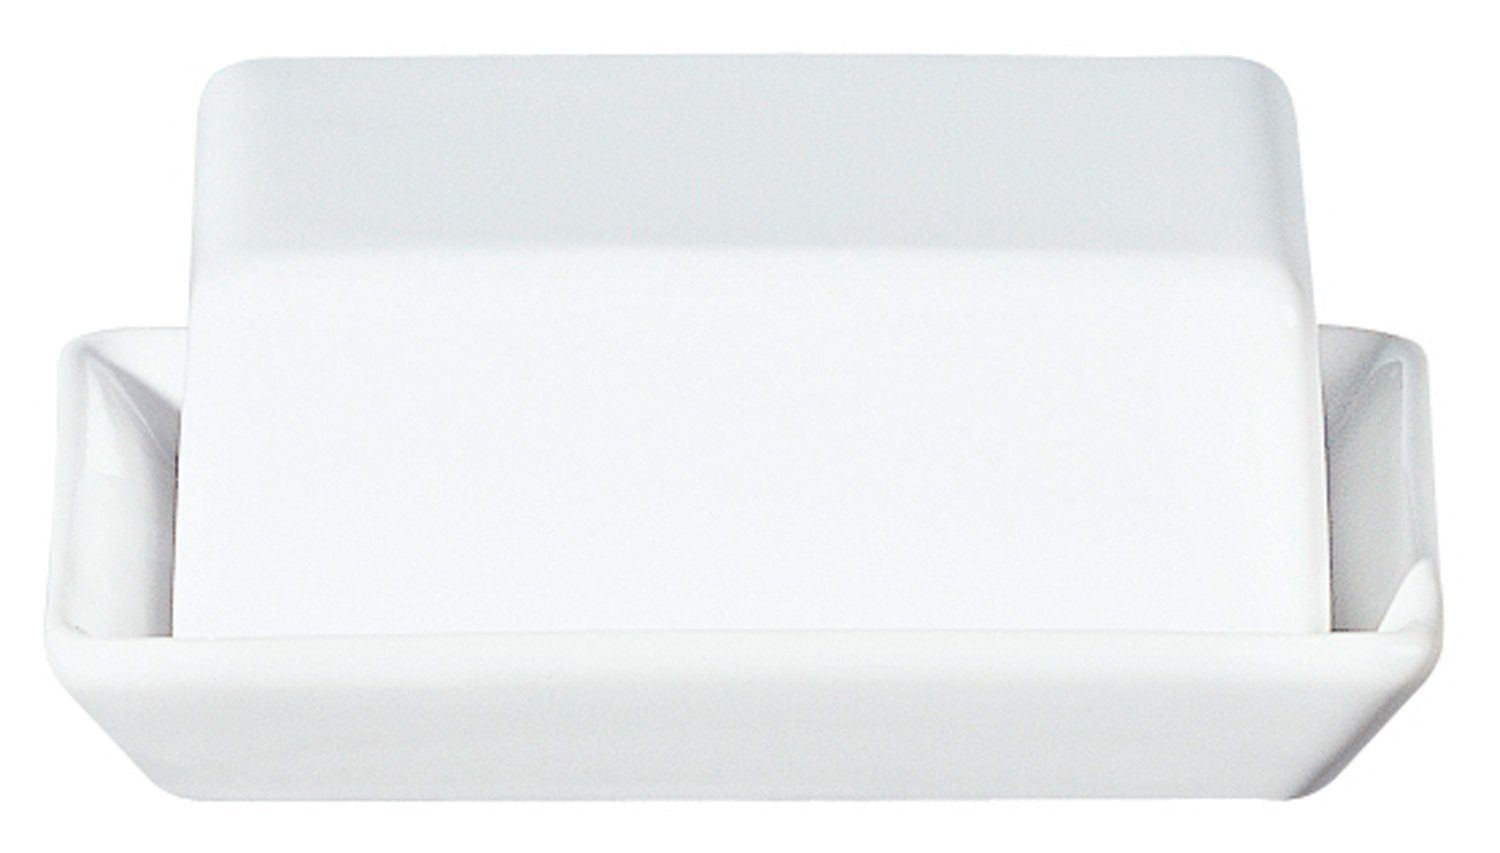 ASA SELECTION Butterdose GRANDE, Weiß, B 16 cm, T 13 cm, Steingut, mit glänzender Oberfläche